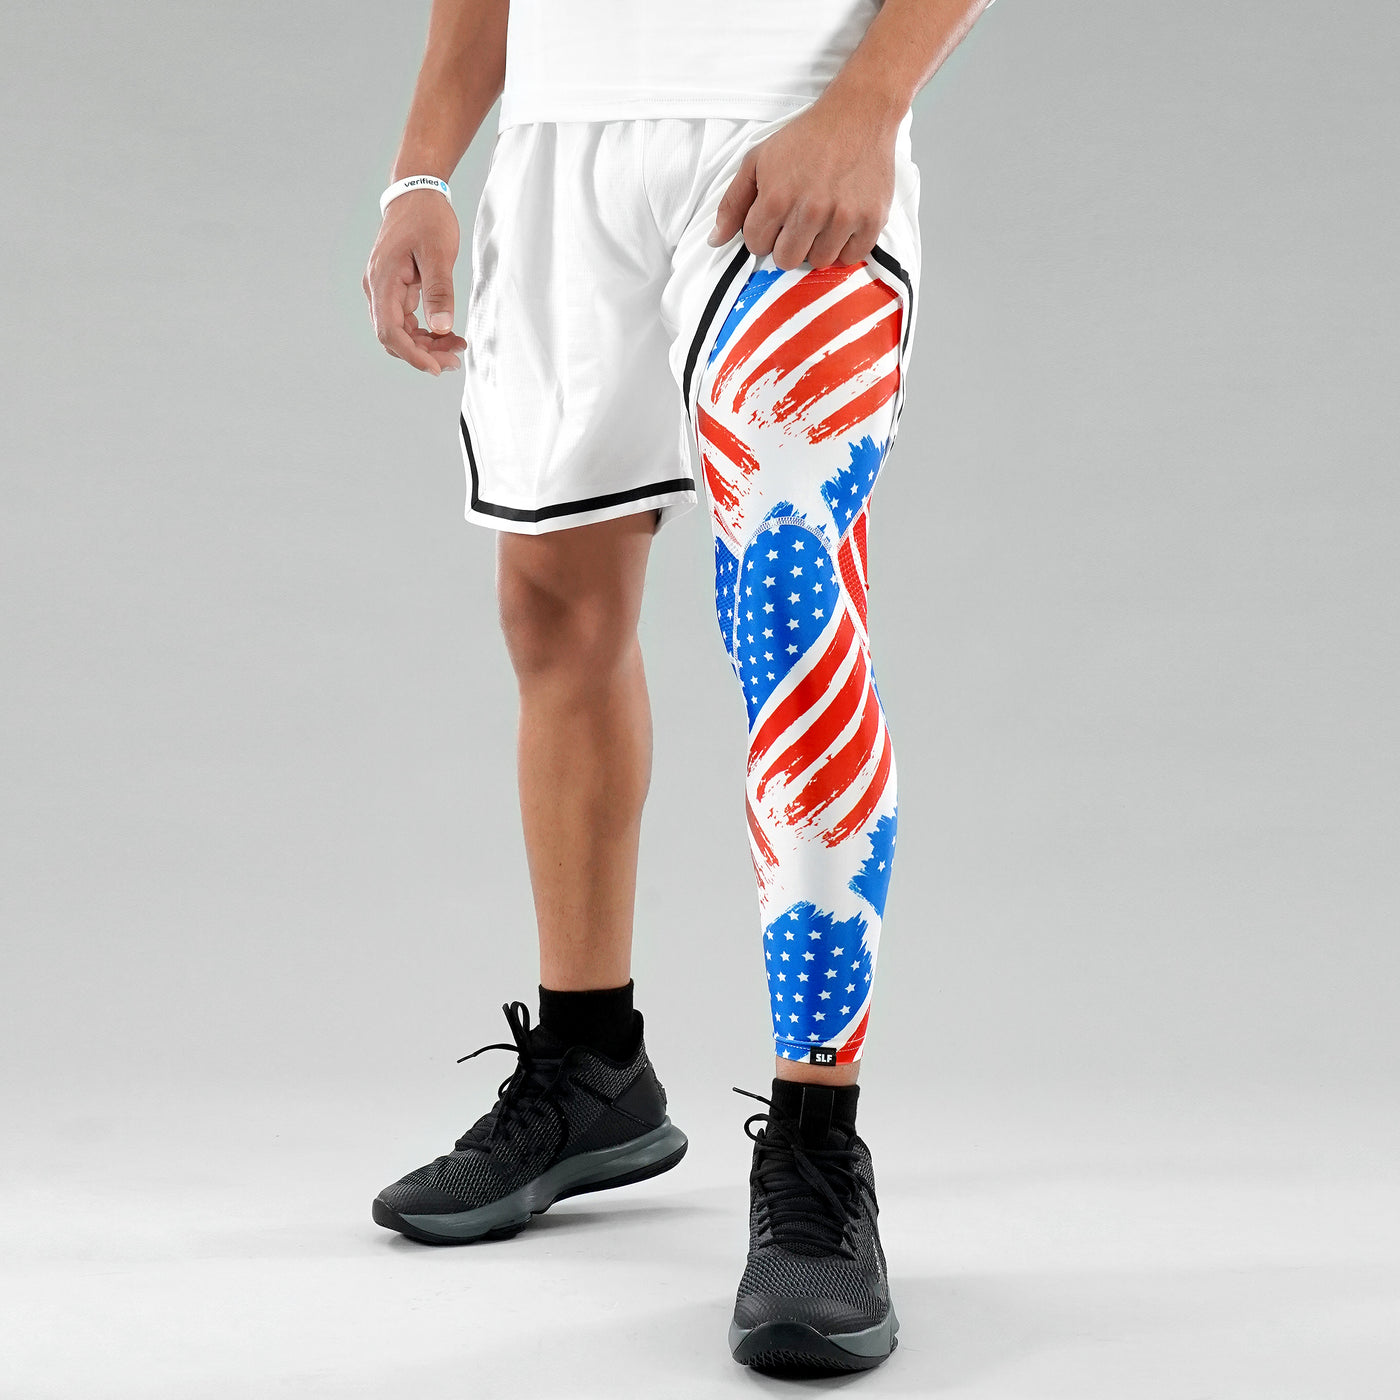 USA Brushed Flag Pro Leg Sleeve